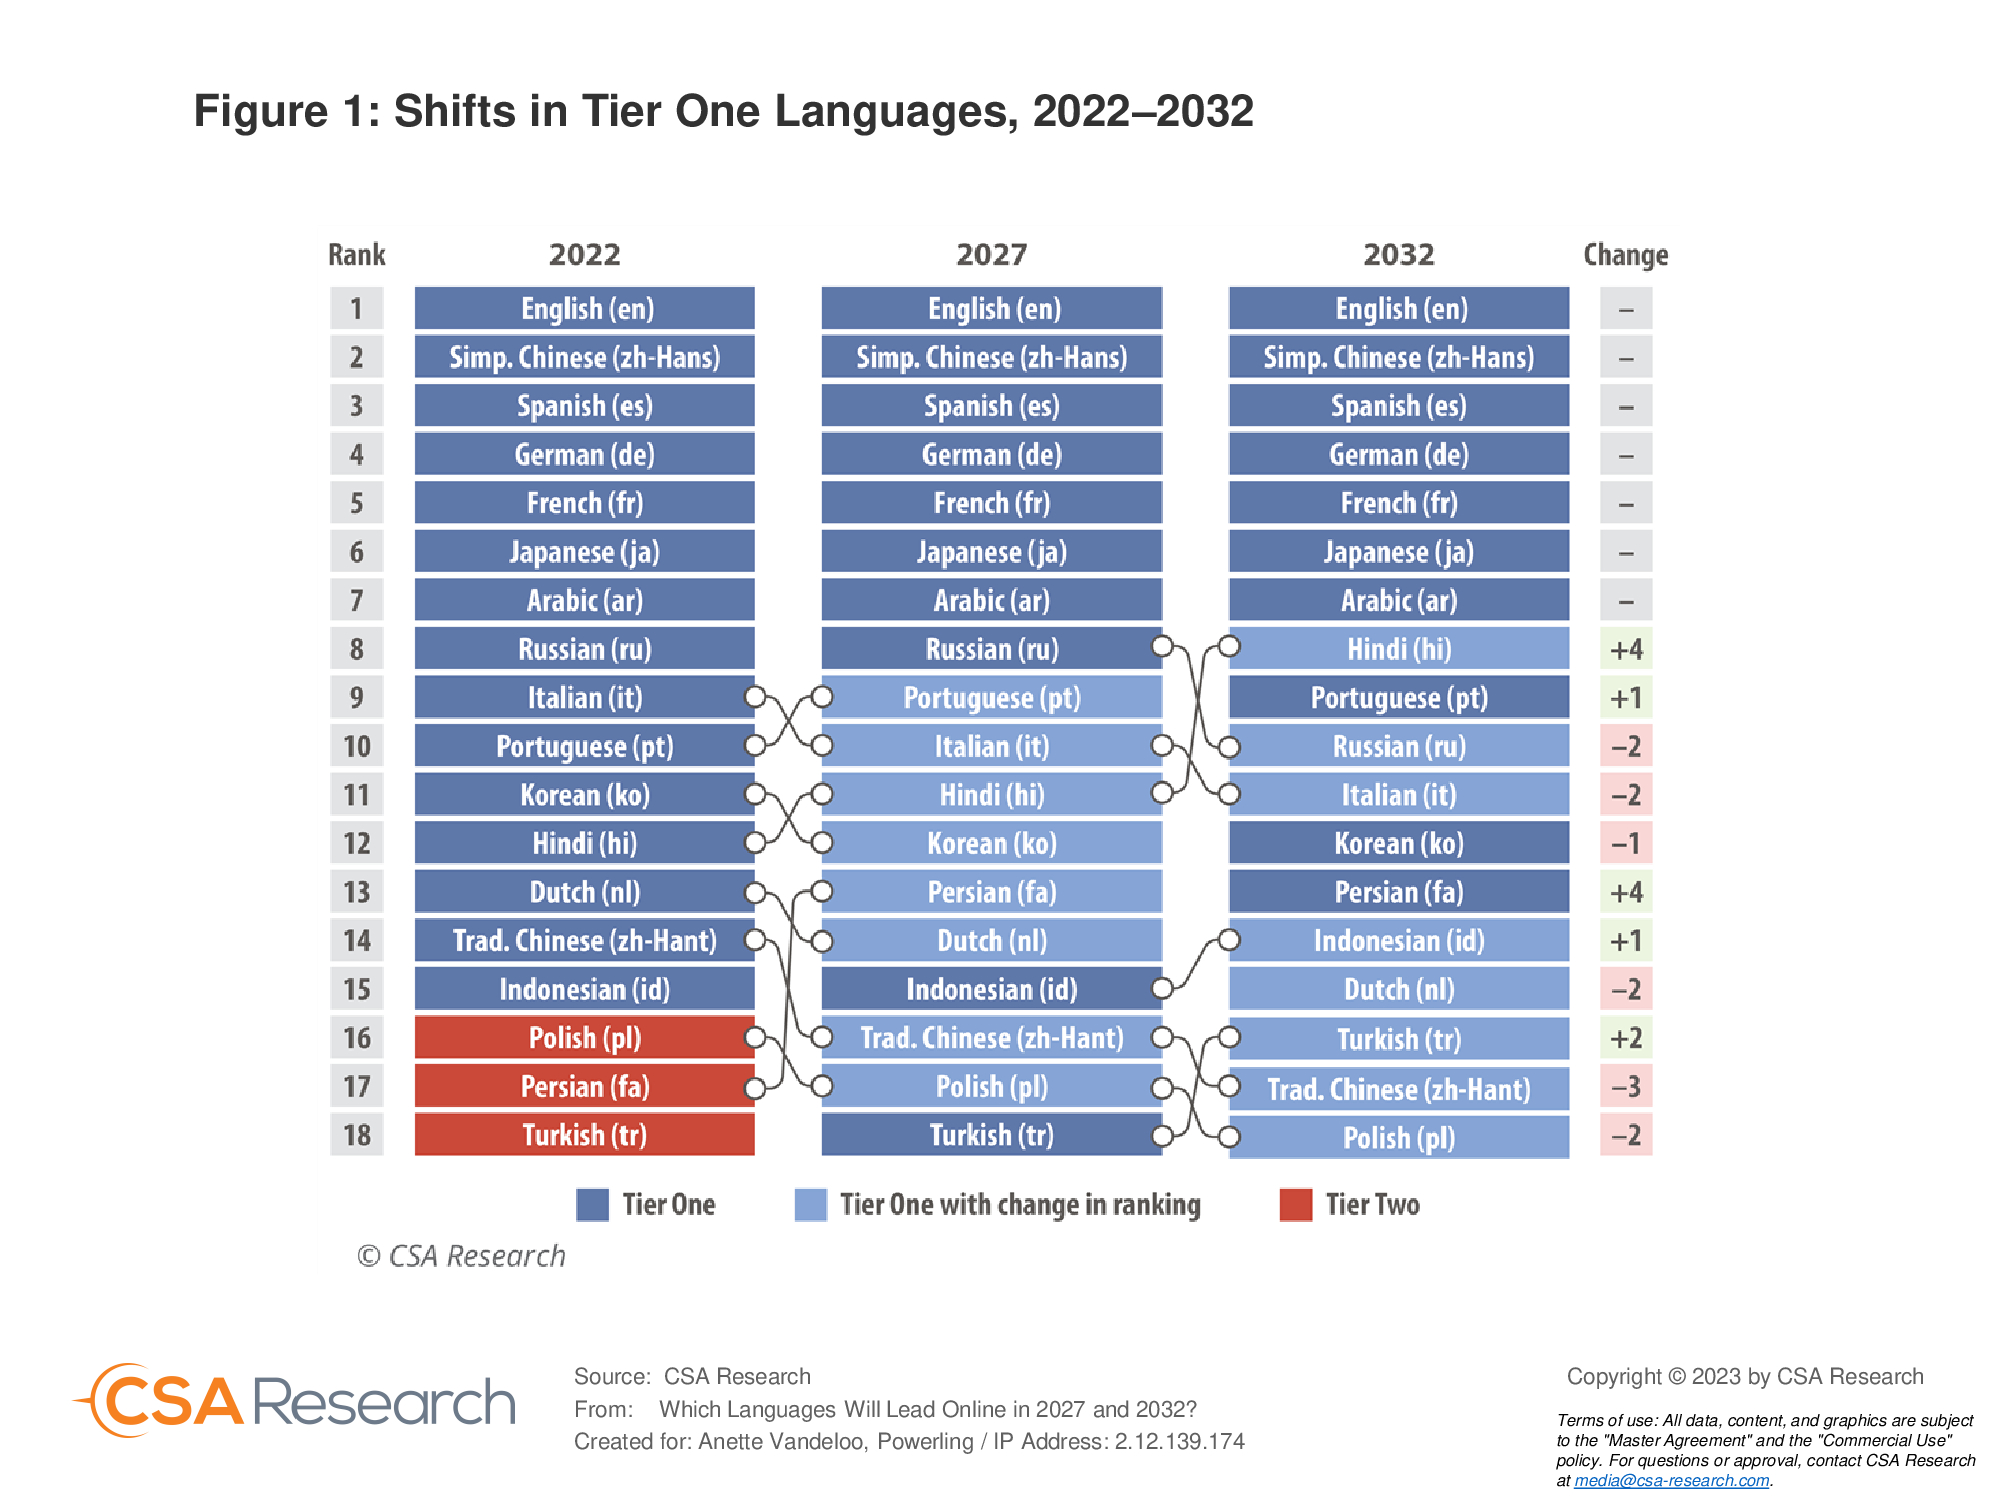 Languages that lead online